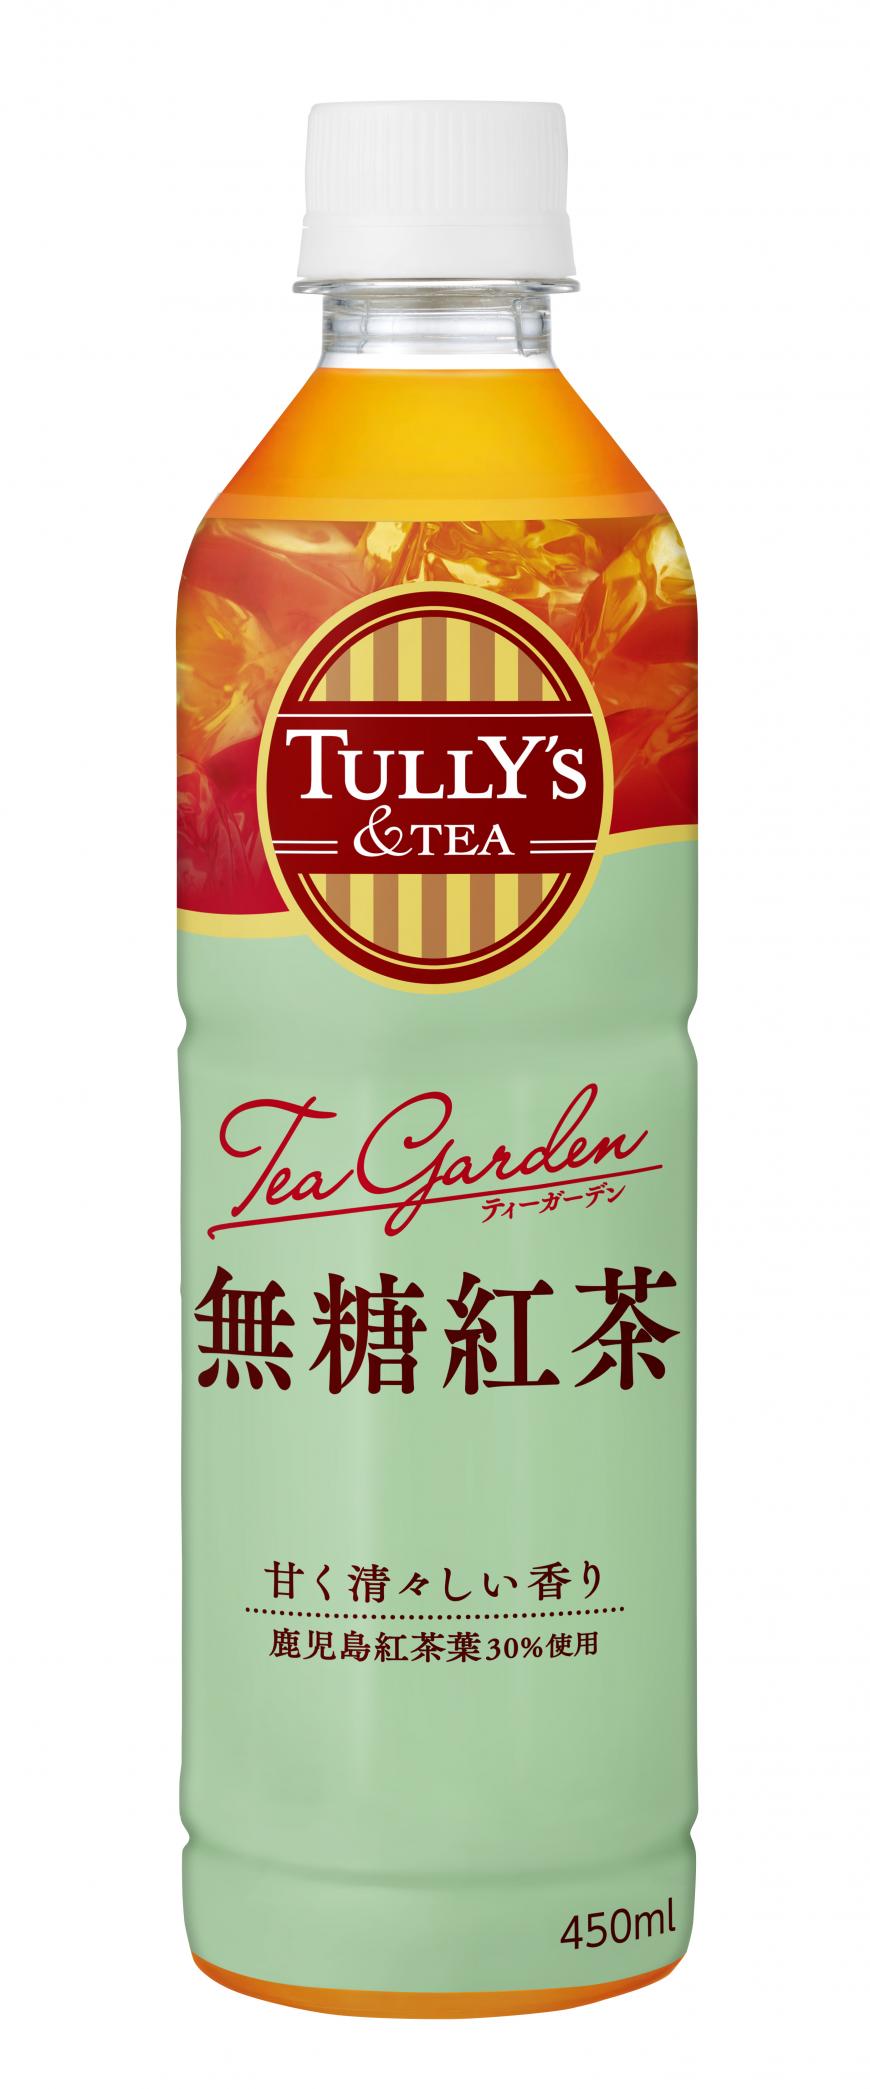 uTULLYfS &TEA Tea Garden gvA48ijɐV